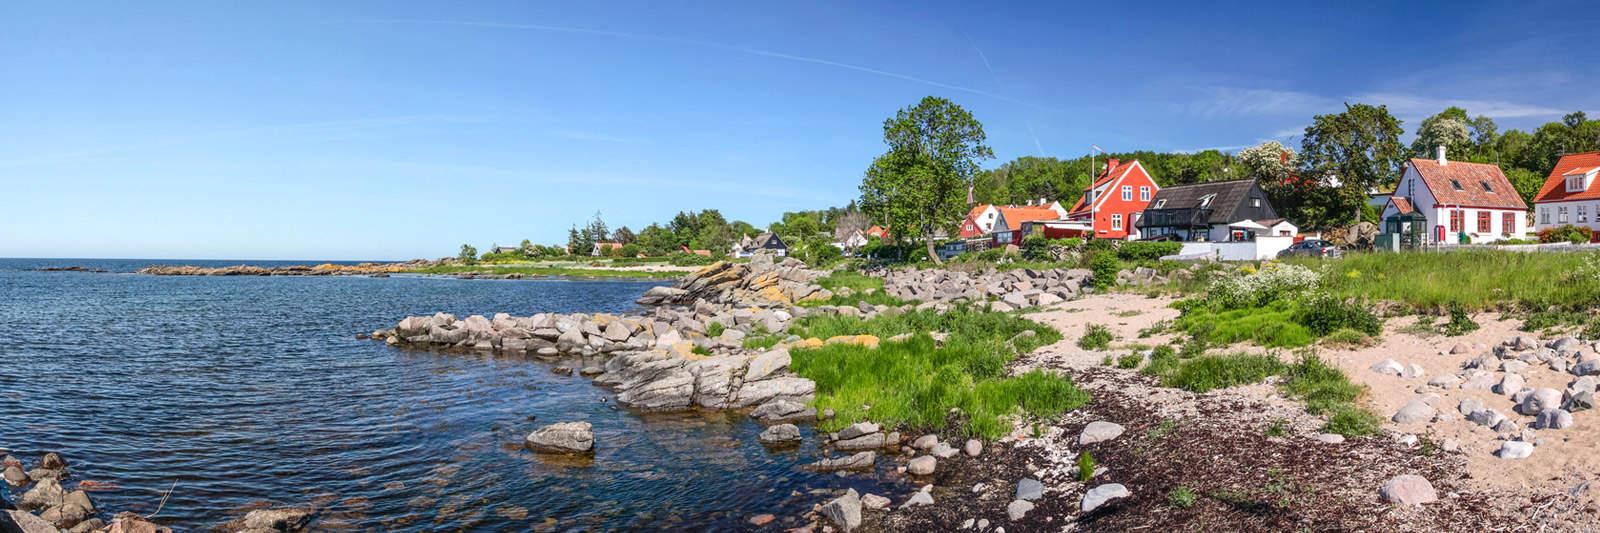 23 Ferienwohnungen und Ferienhäuser in Nyborg - tourist-online.de